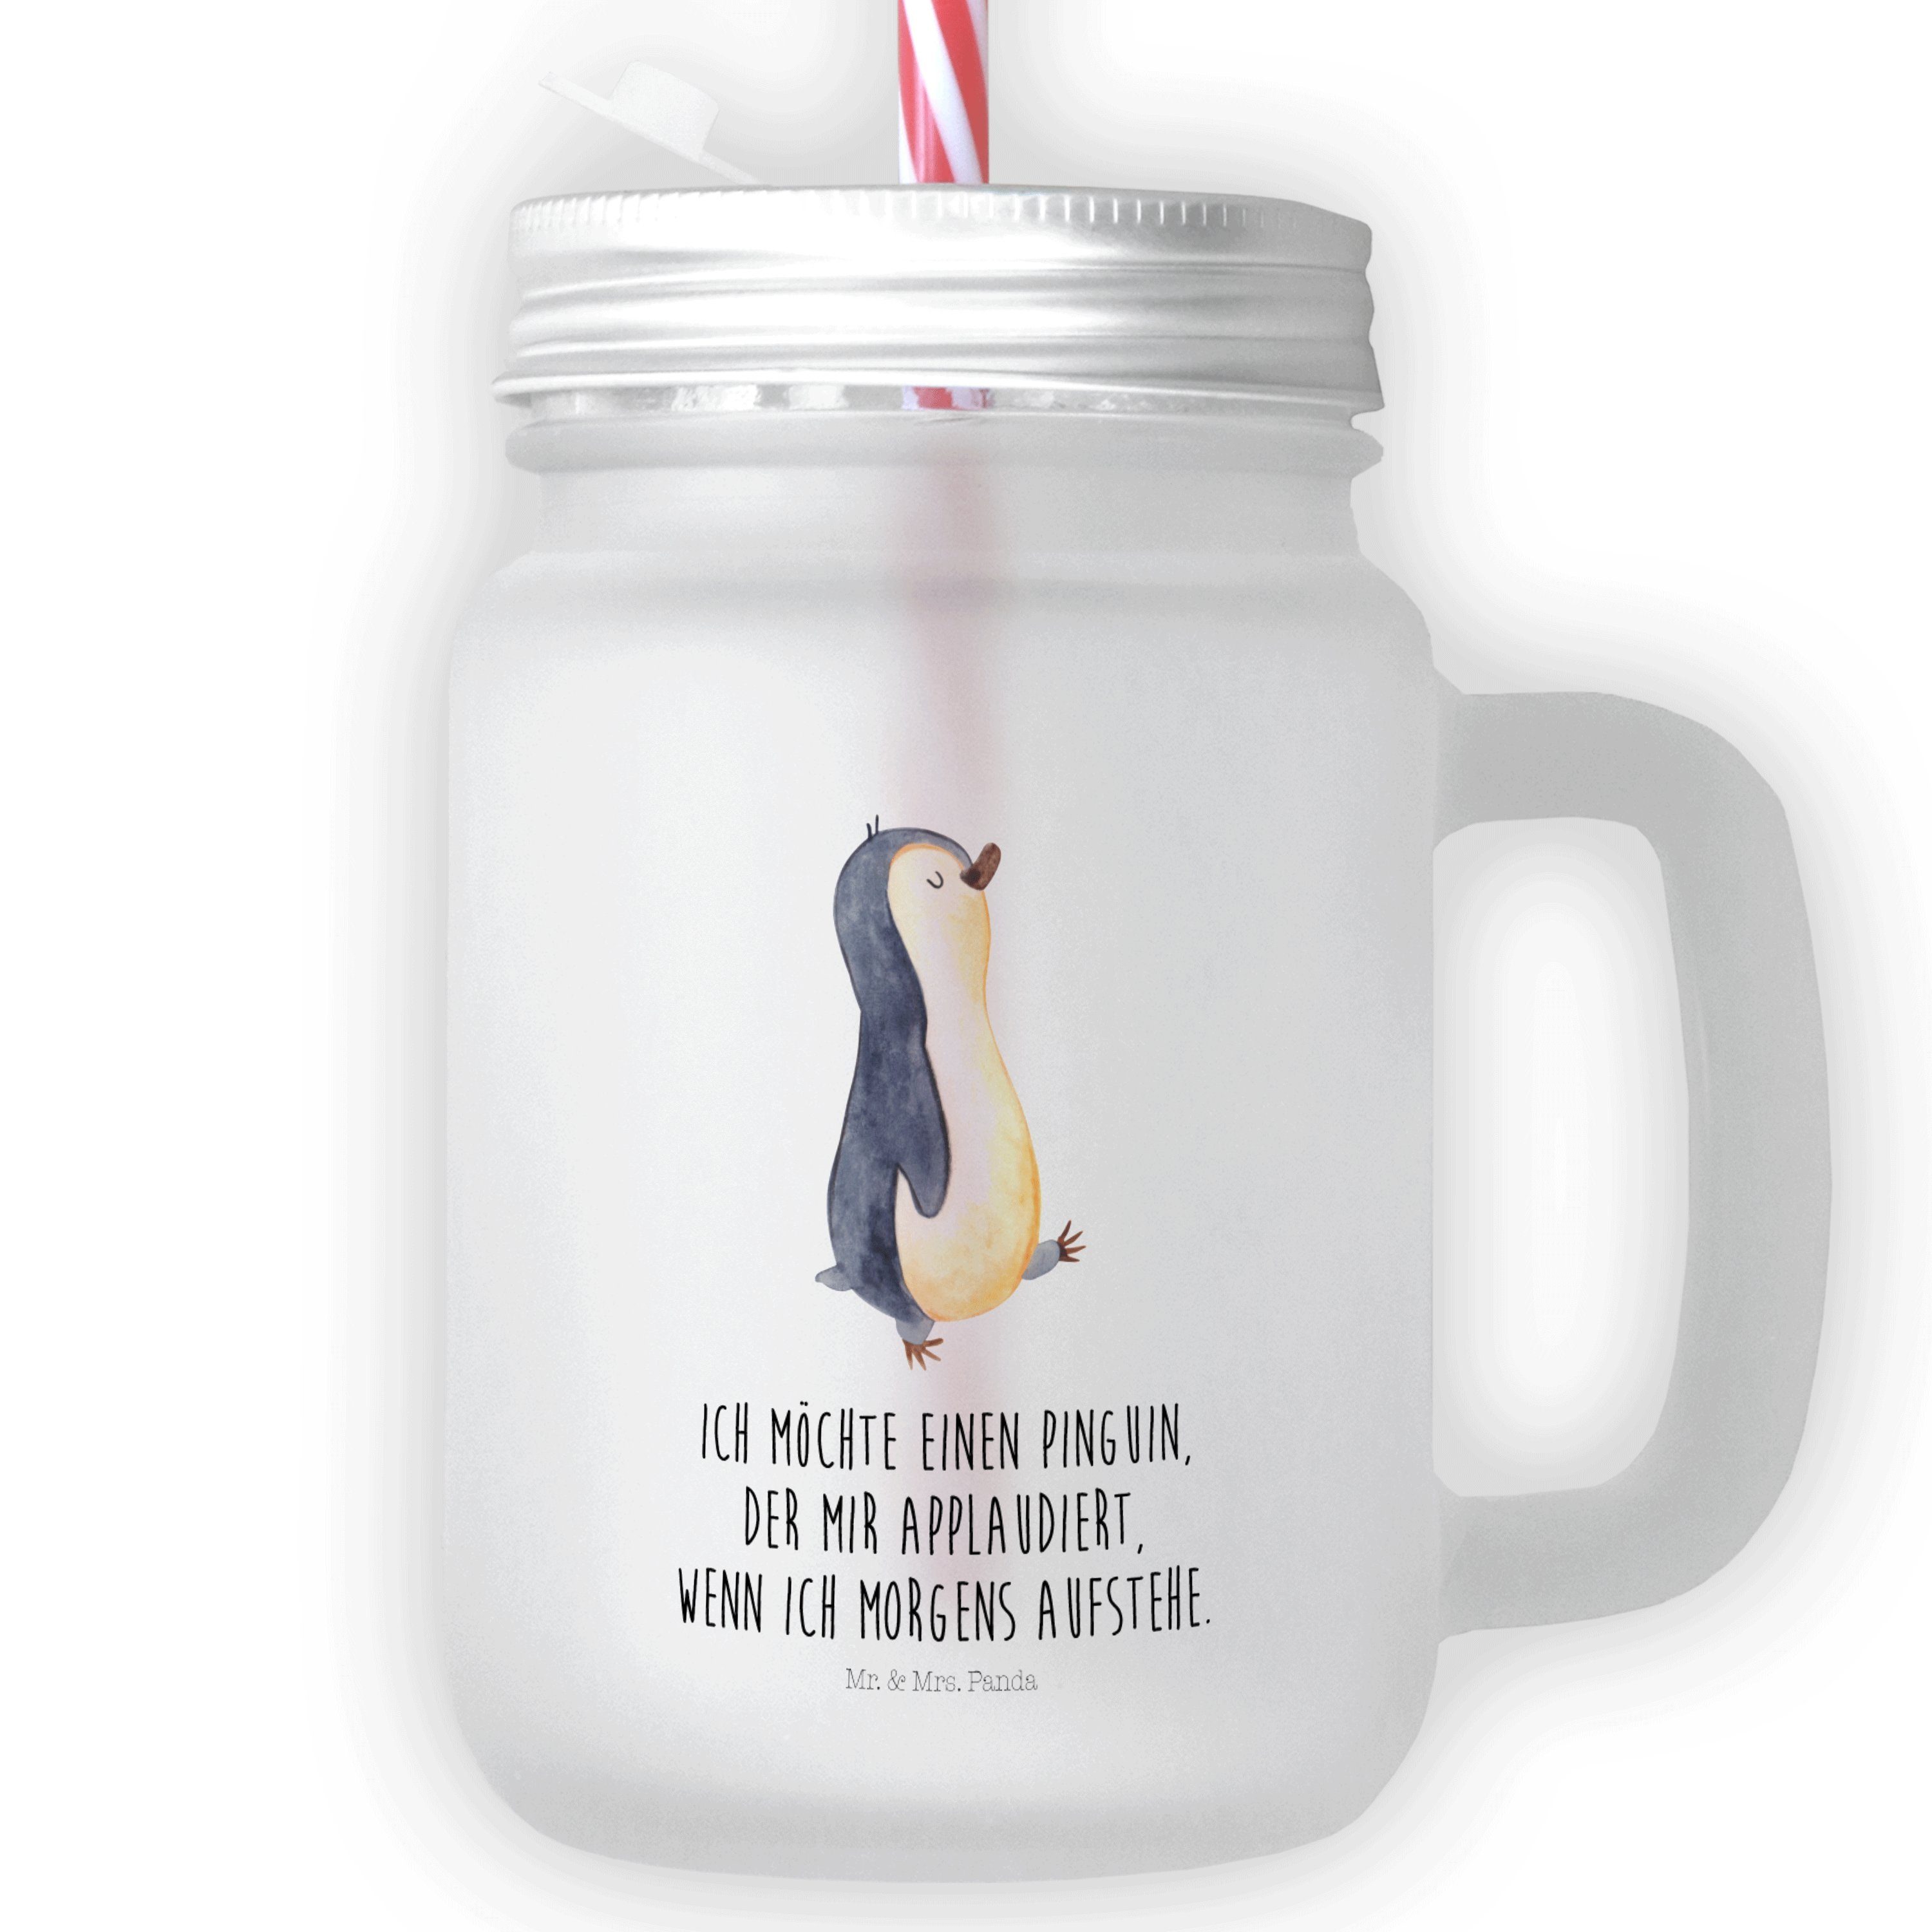 Mr. & Mrs. Panda Glas Pinguin marschierend - Transparent - Geschenk, Mason Jar Trinkglas, z, Premium Glas